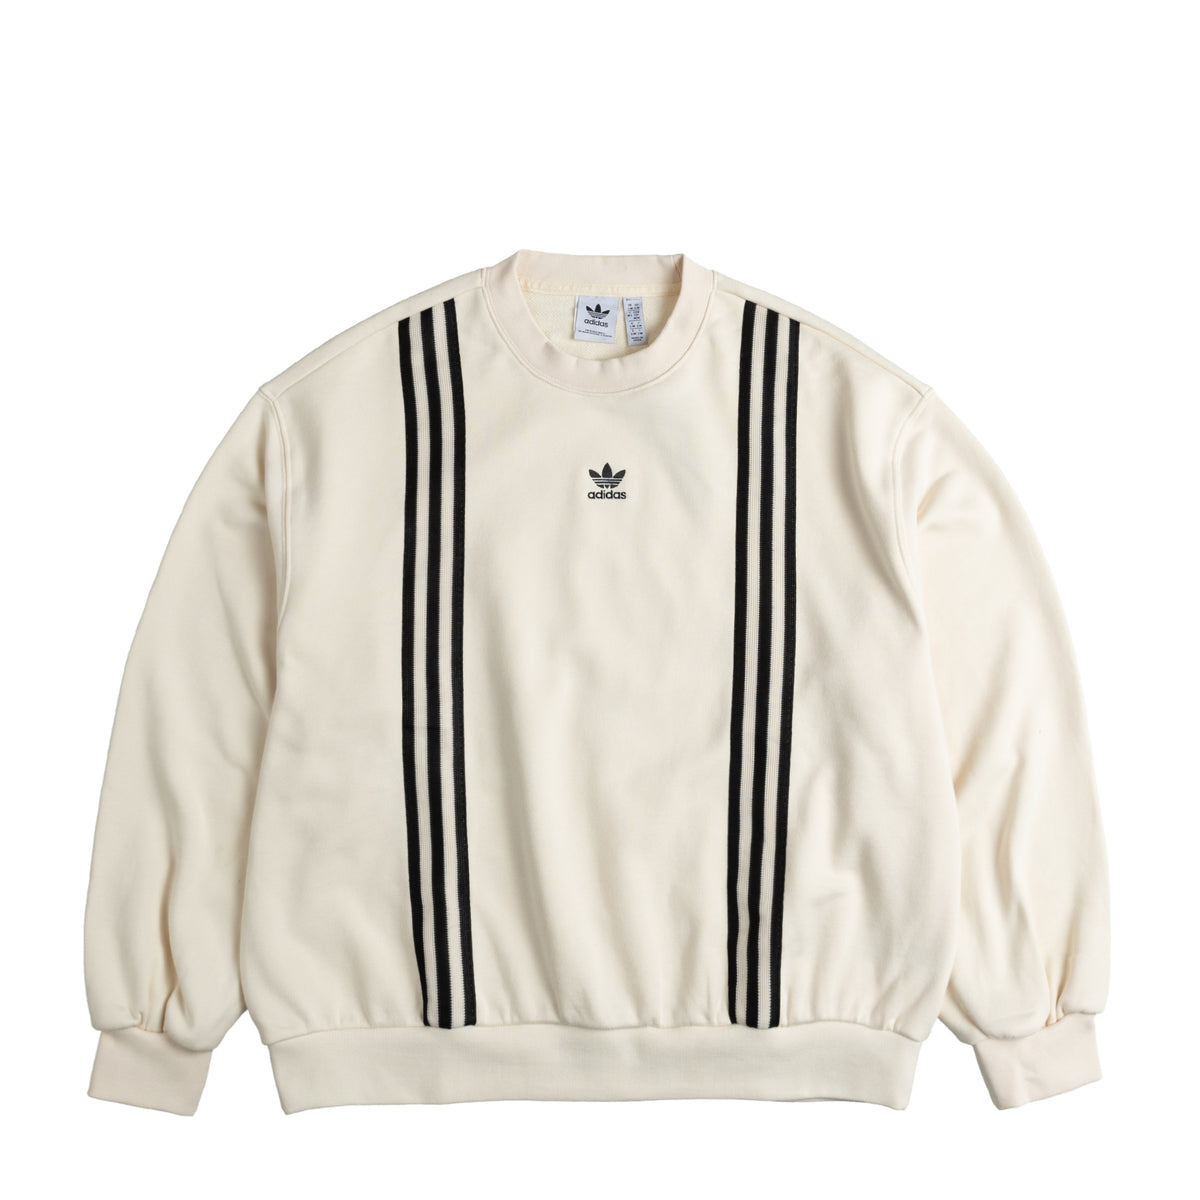 Adidas 3S Sweatshirt » Buy online now!